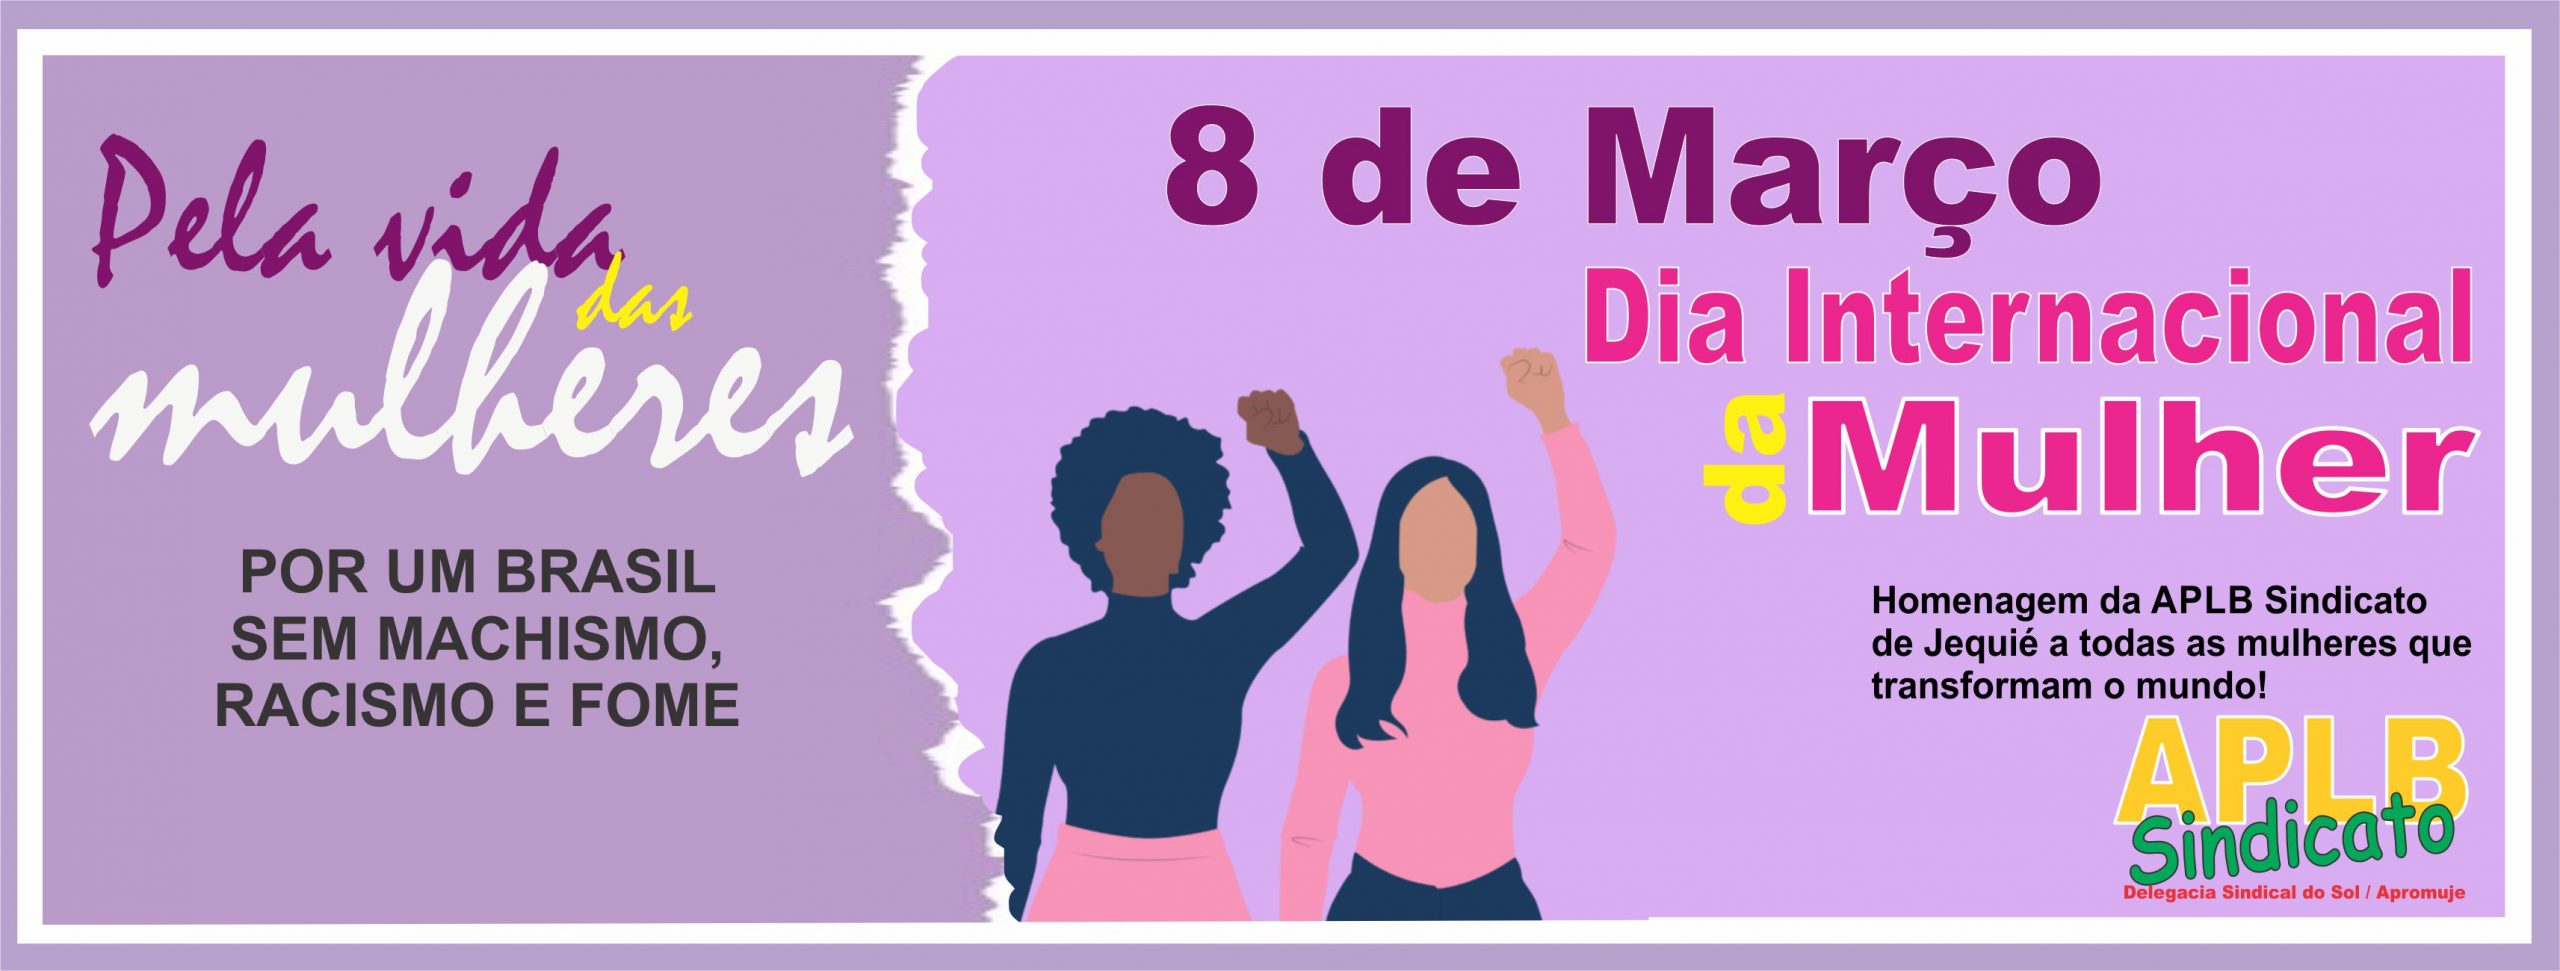 8 DE MARÇO – Pela Vida das Mulheres: por um Brasil sem machismo, racismo e fome!